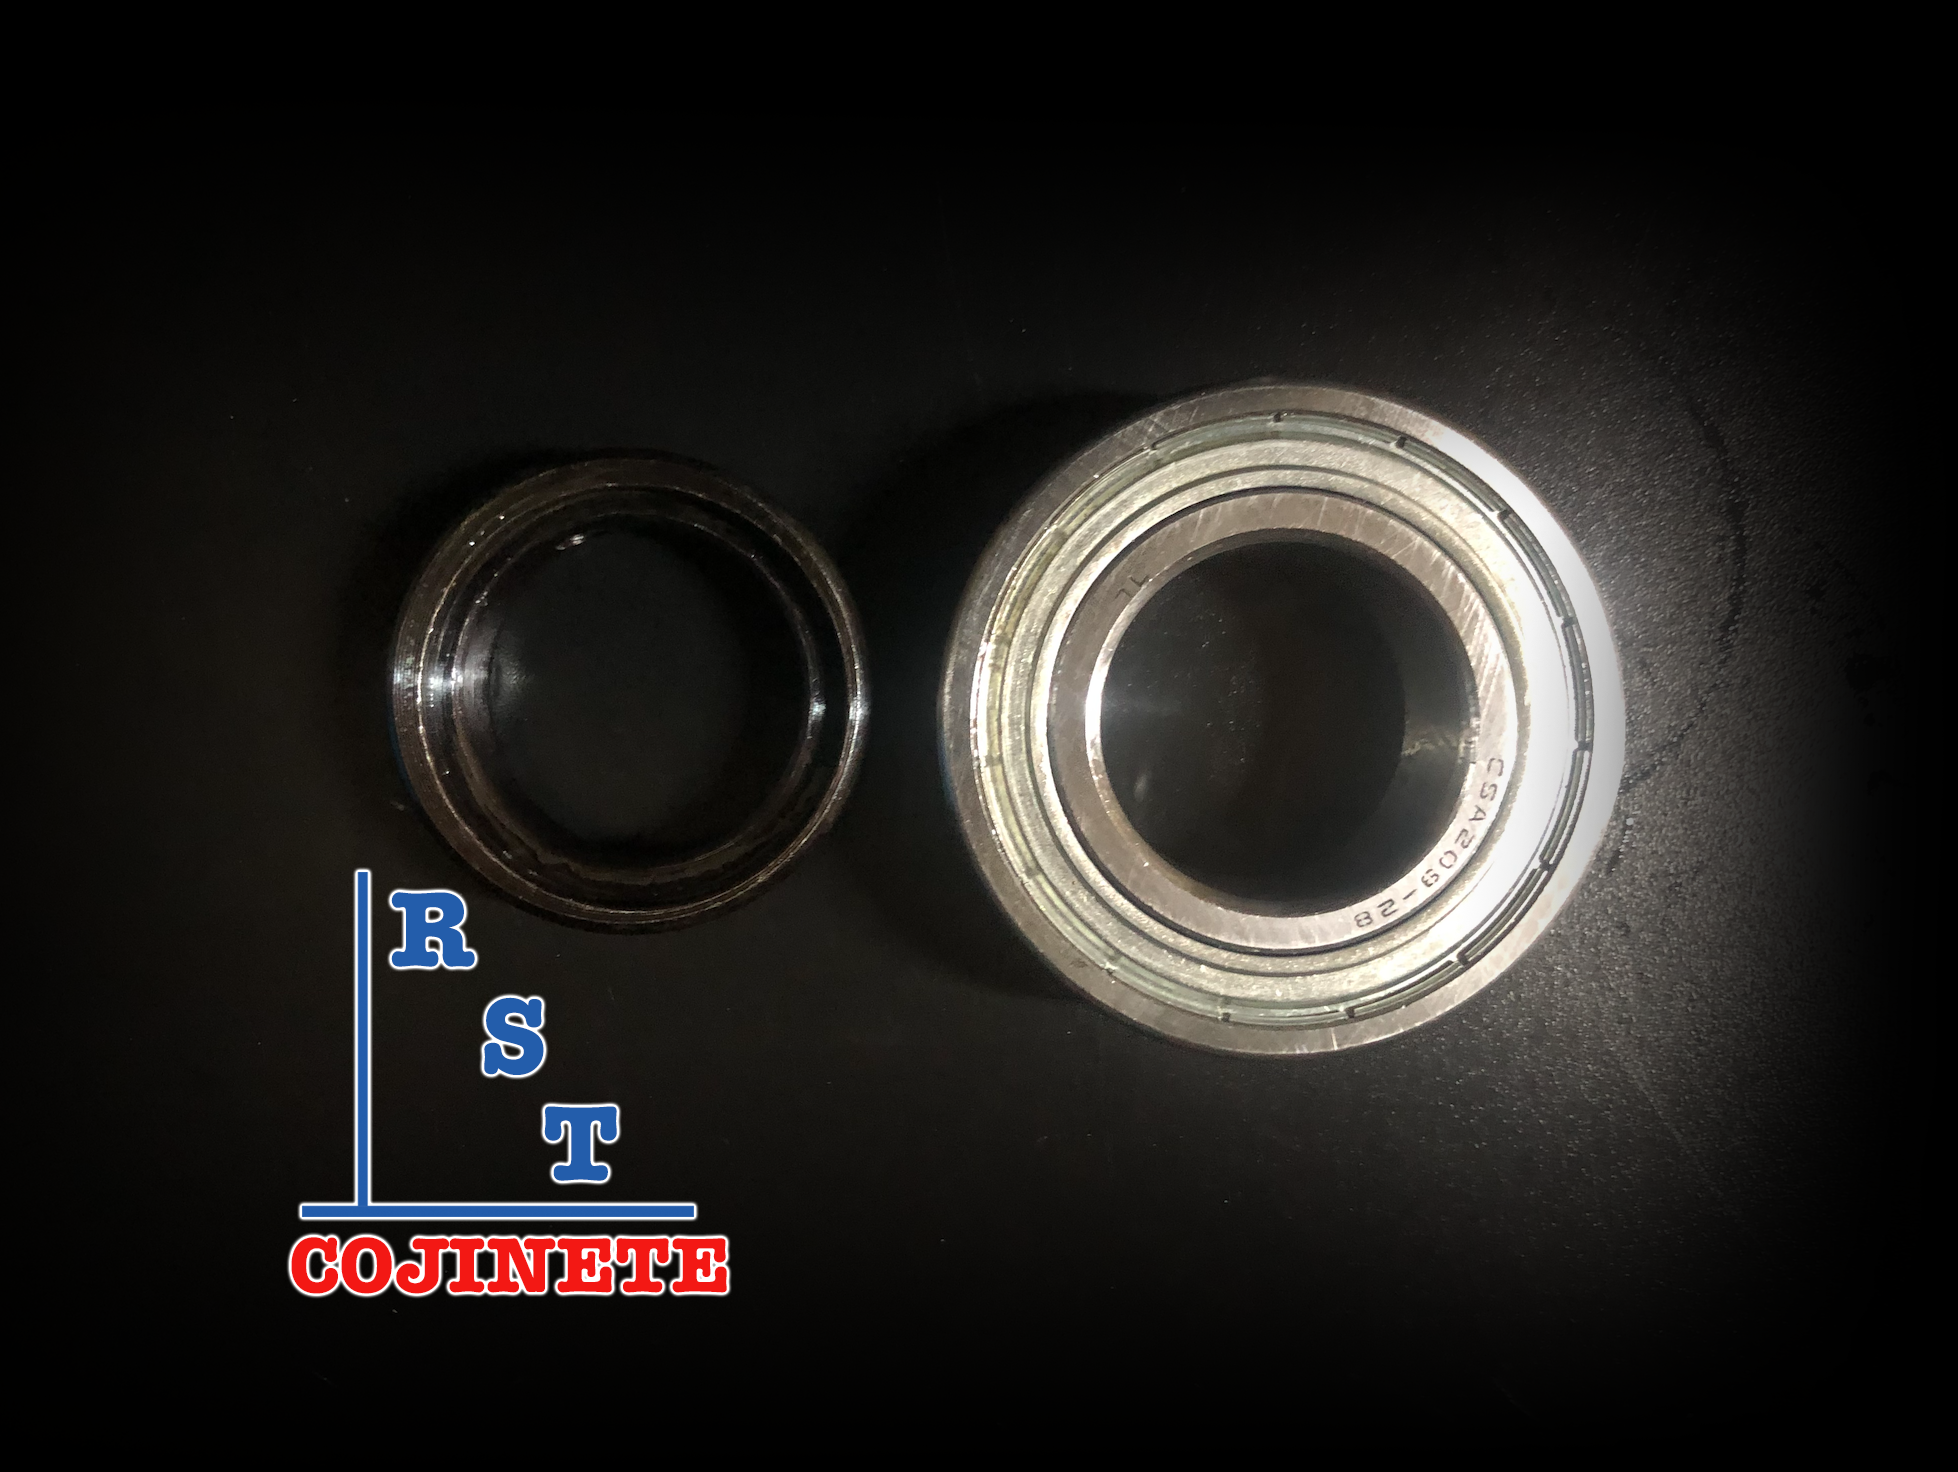 Rodamiento CSA205-14 | Cojinete para chumaceras con eje de ⅞" con respaldo plano y anillo excéntrico